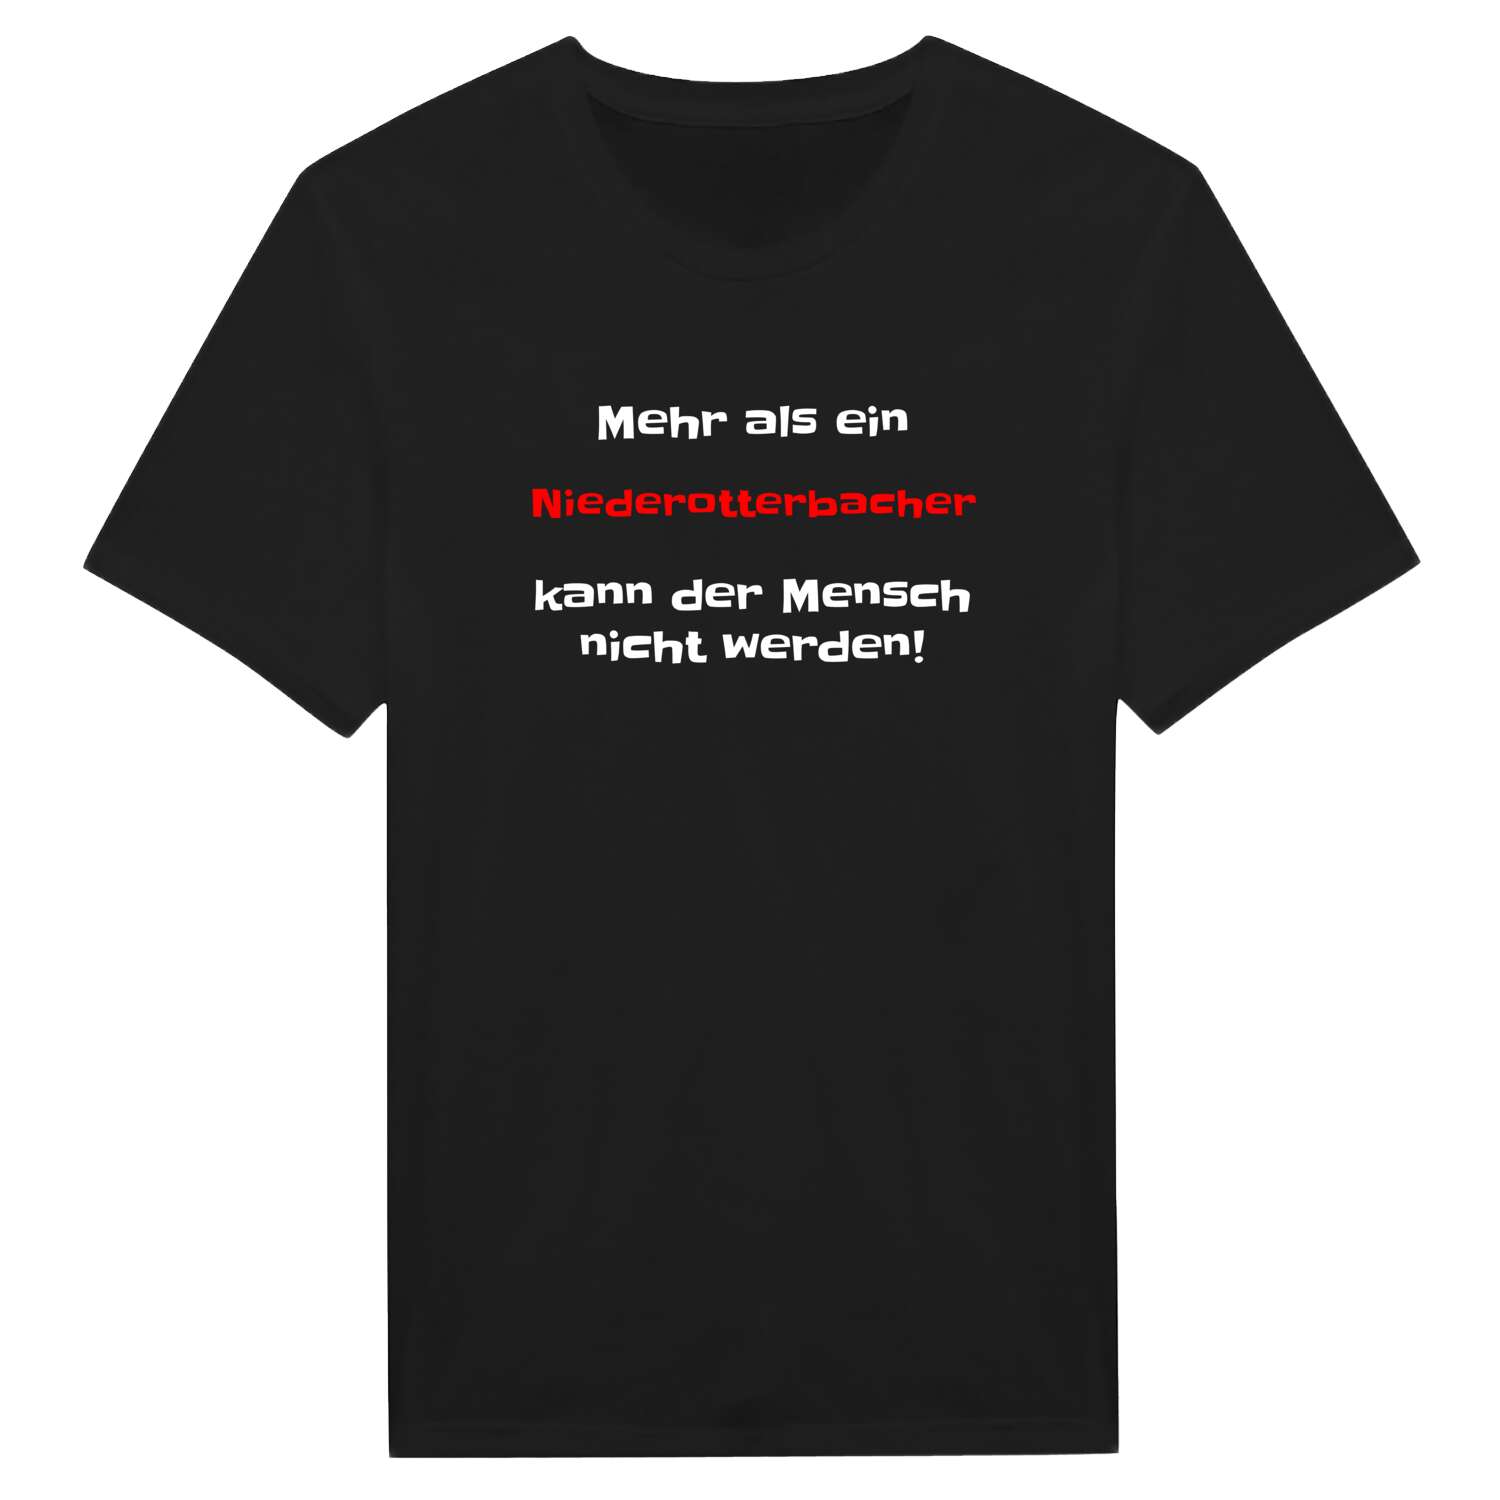 Niederotterbach T-Shirt »Mehr als ein«